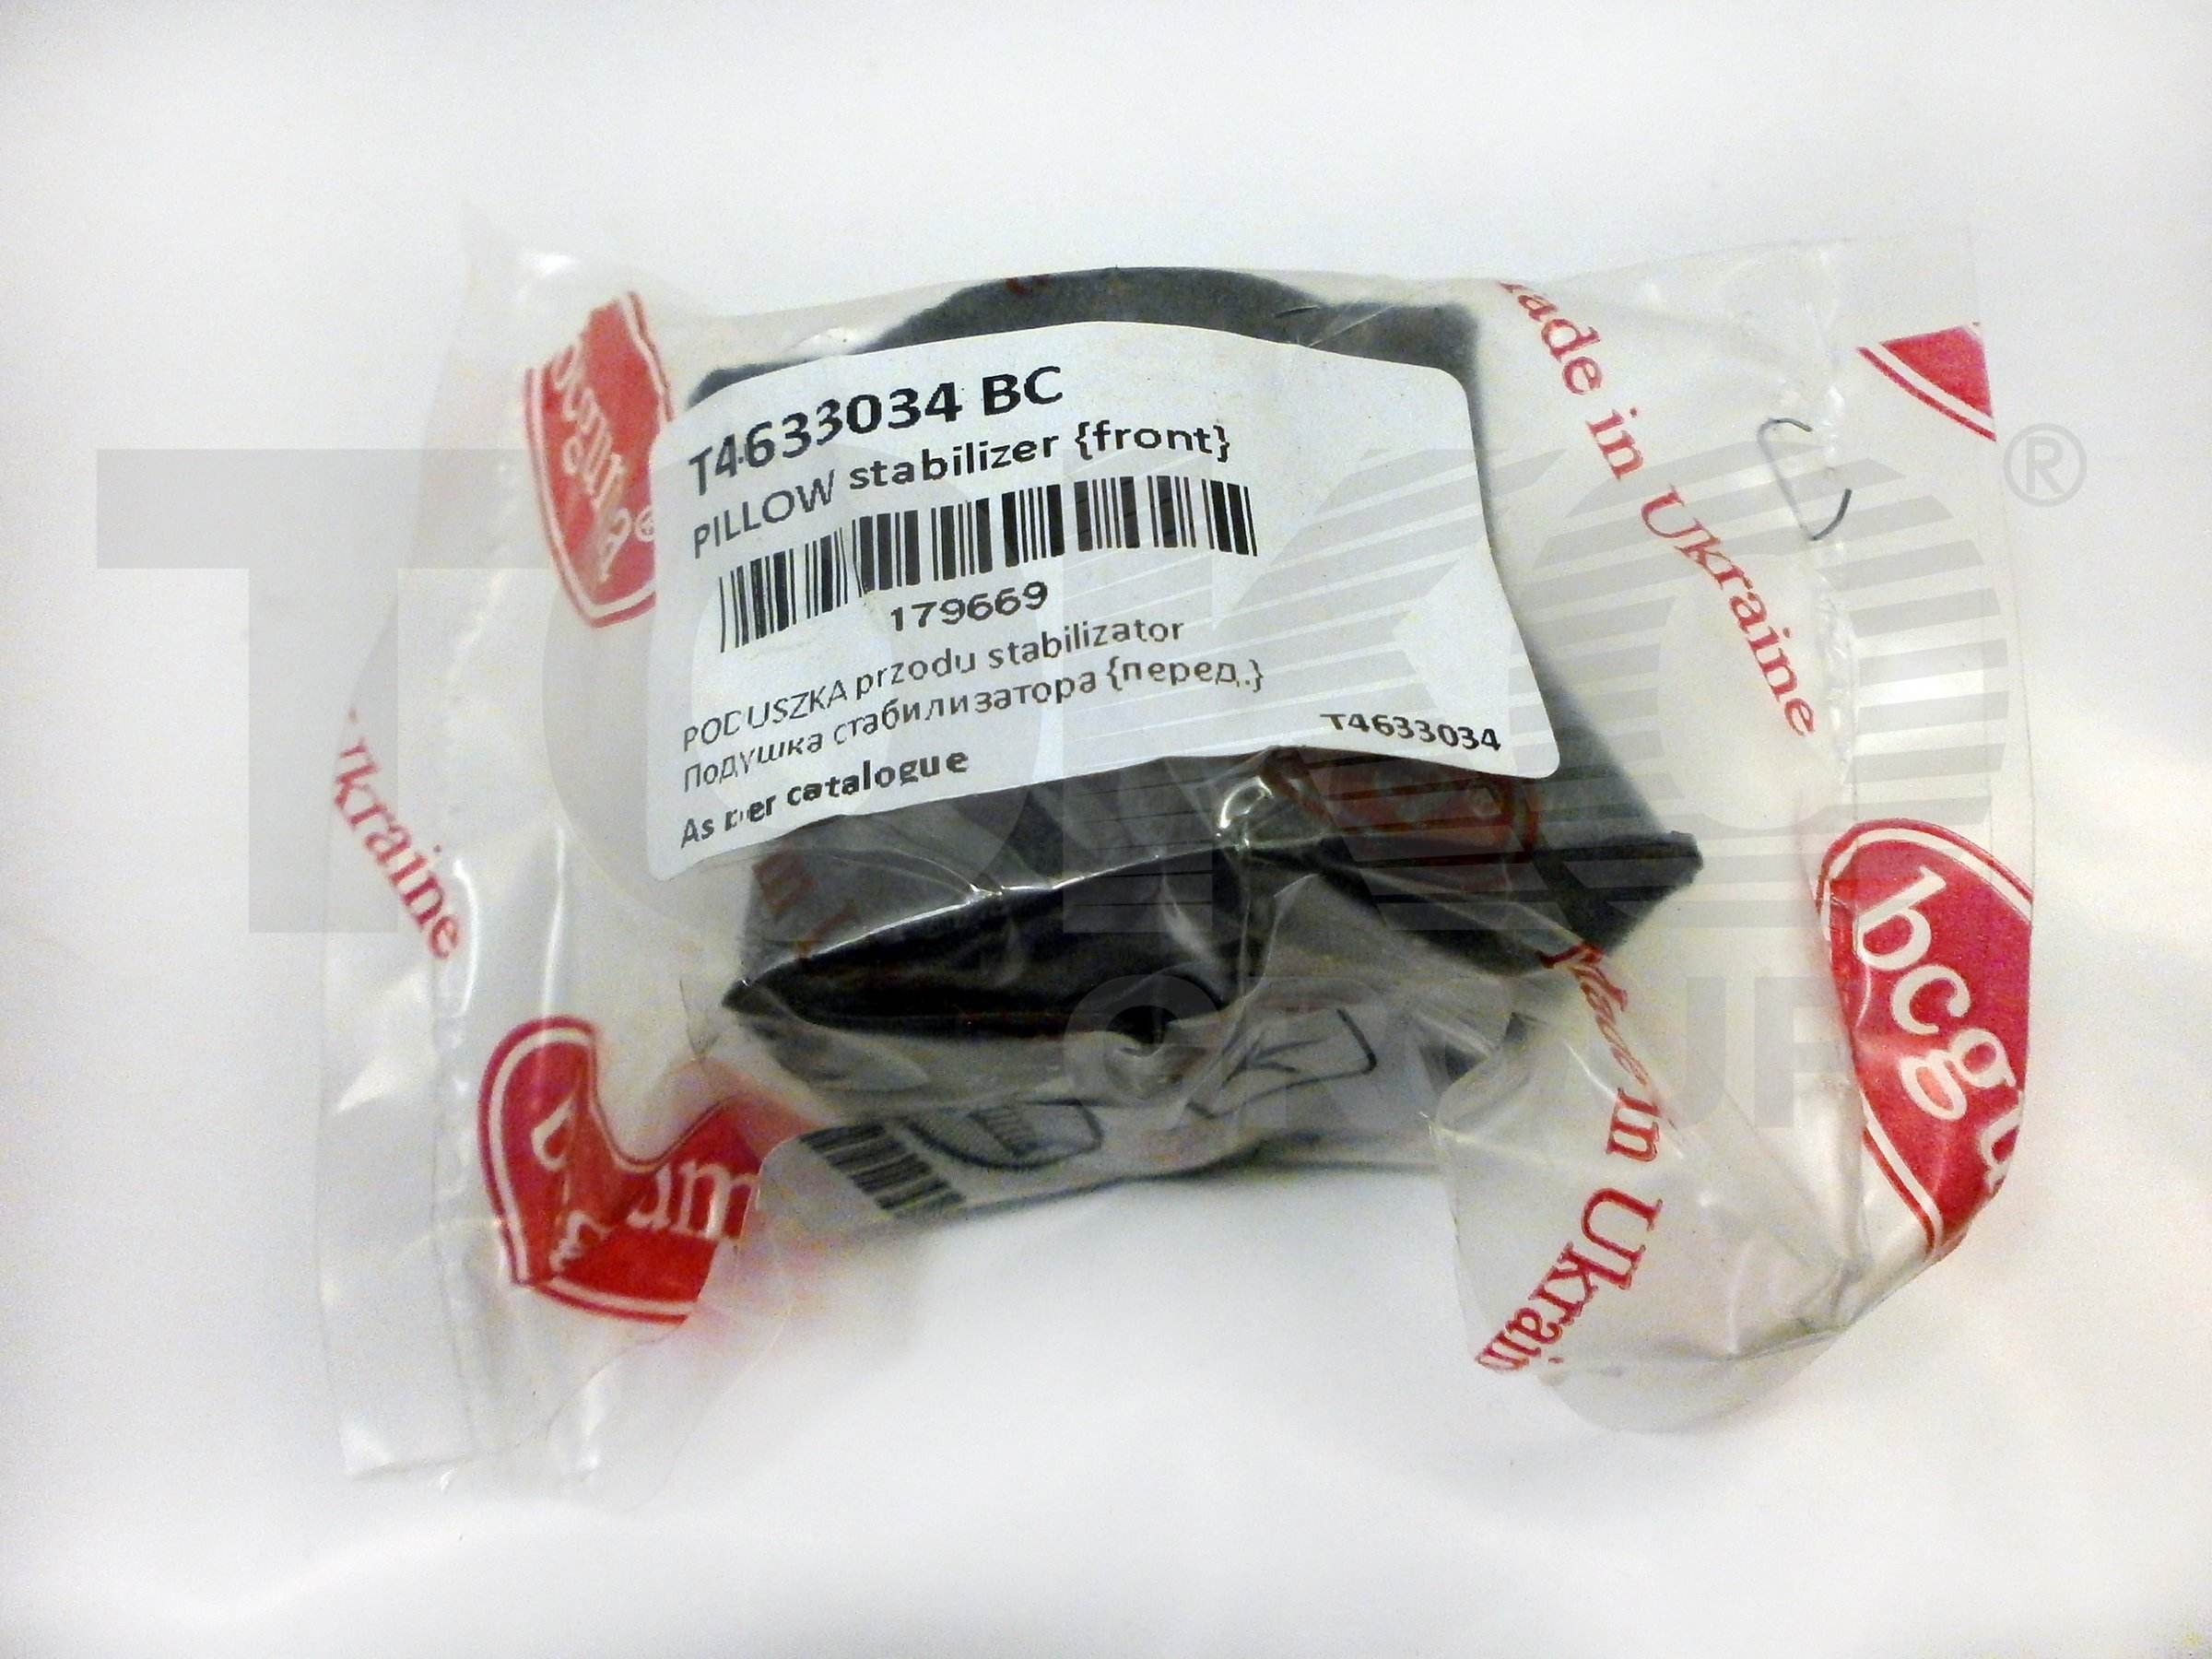 Подушка переднего стабилизатора BC09141 неармиров. (bcguma) BCGUMA BC09141 - Фото #1